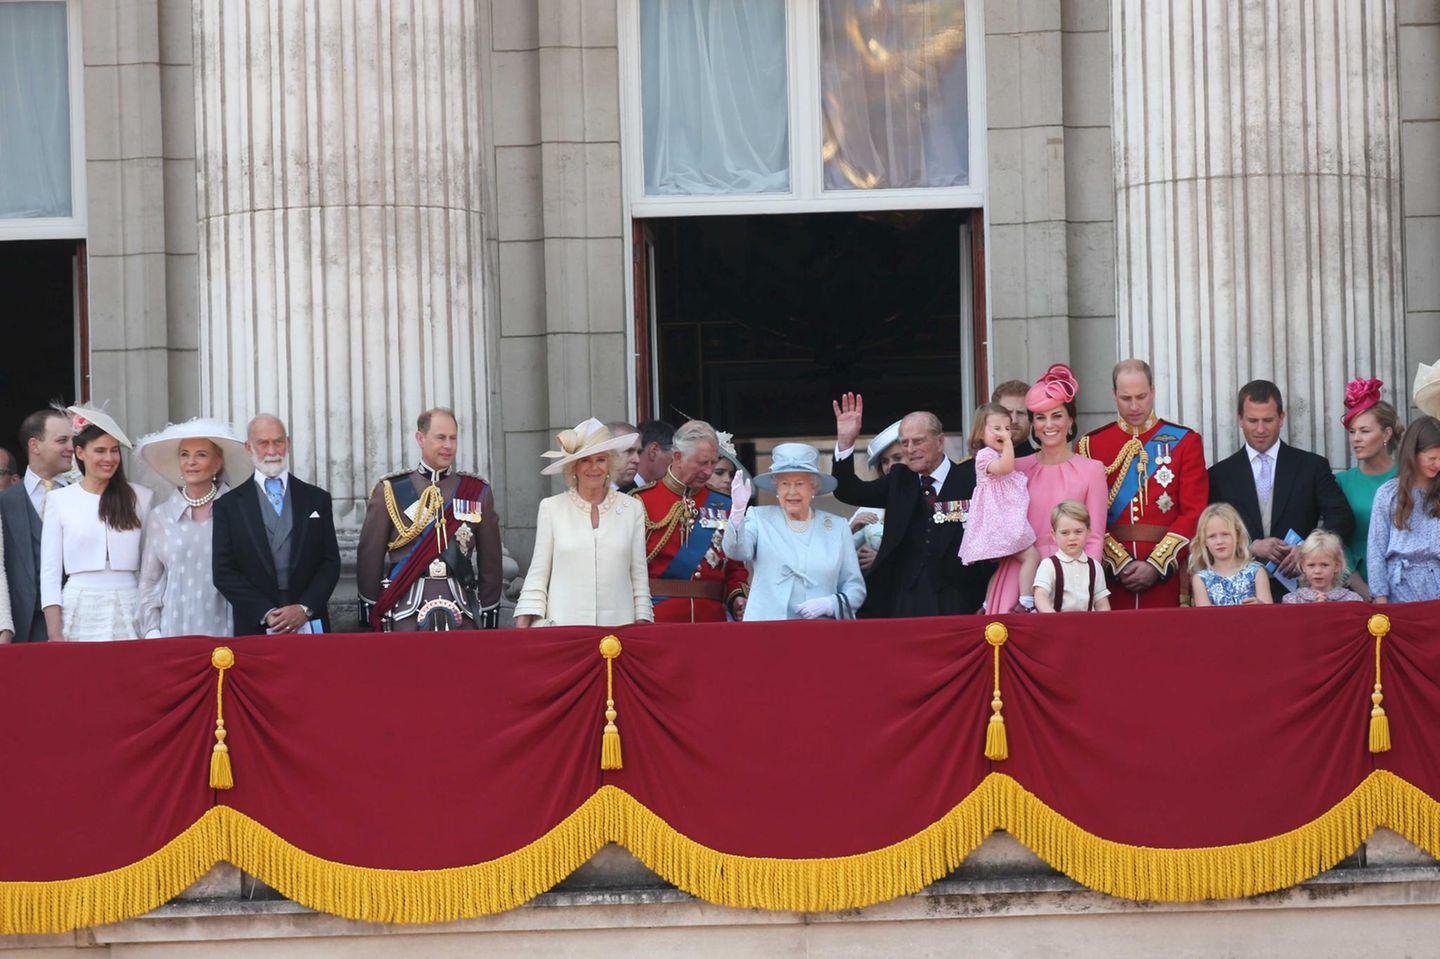 Die ganze große königliche Familie ist auf dem Balkon angetreten, mit wenigen Ausnahmen. Insgesamt rund 50 Personen feiern hier mit Queen Elizabeth.